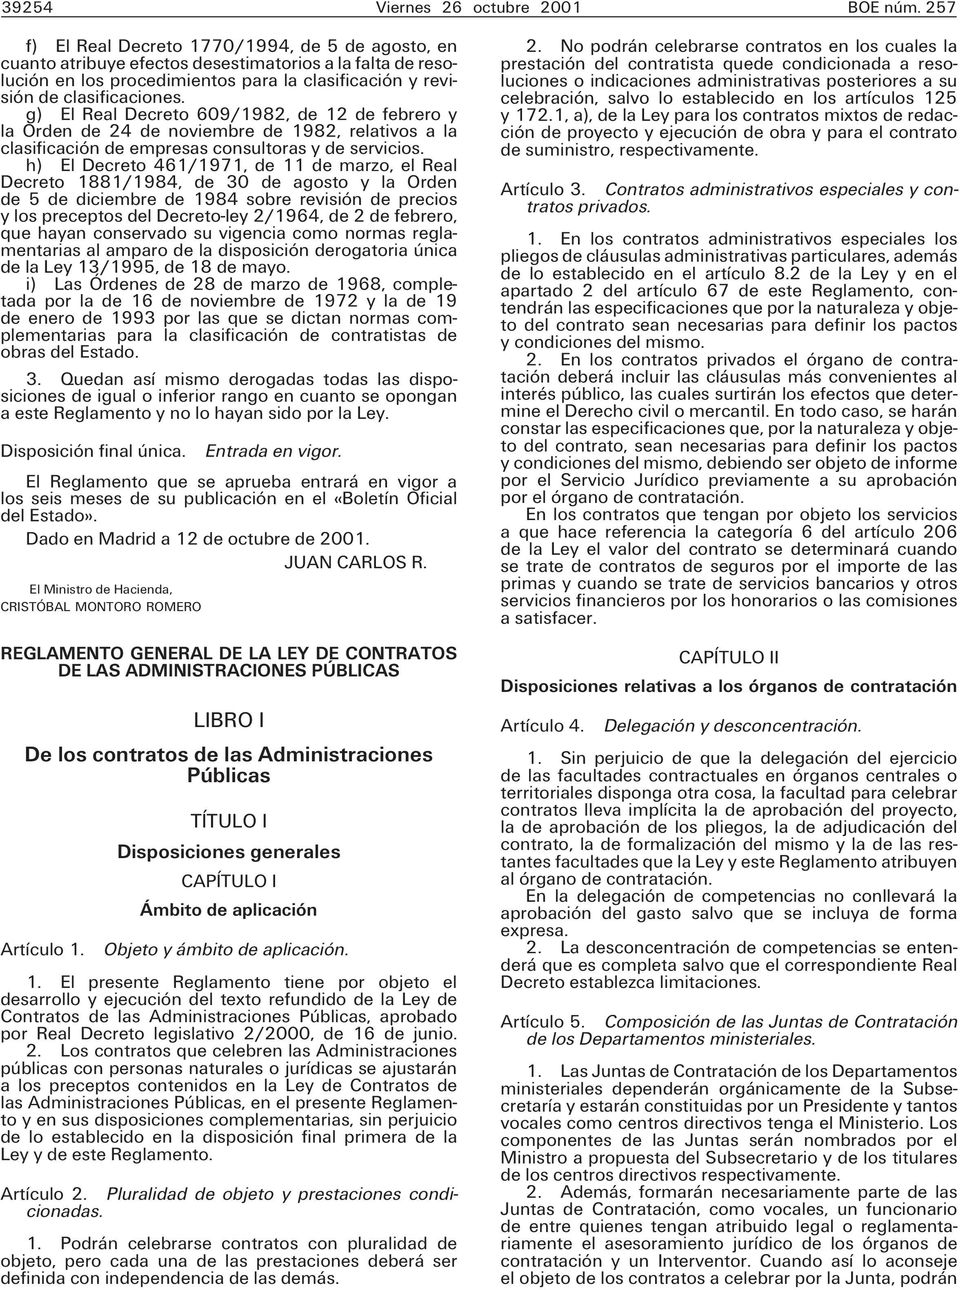 g) El Real Decreto 609/1982, de 12 de febrero y la Orden de 24 de noviembre de 1982, relativos a la clasificación de empresas consultoras y de servicios.